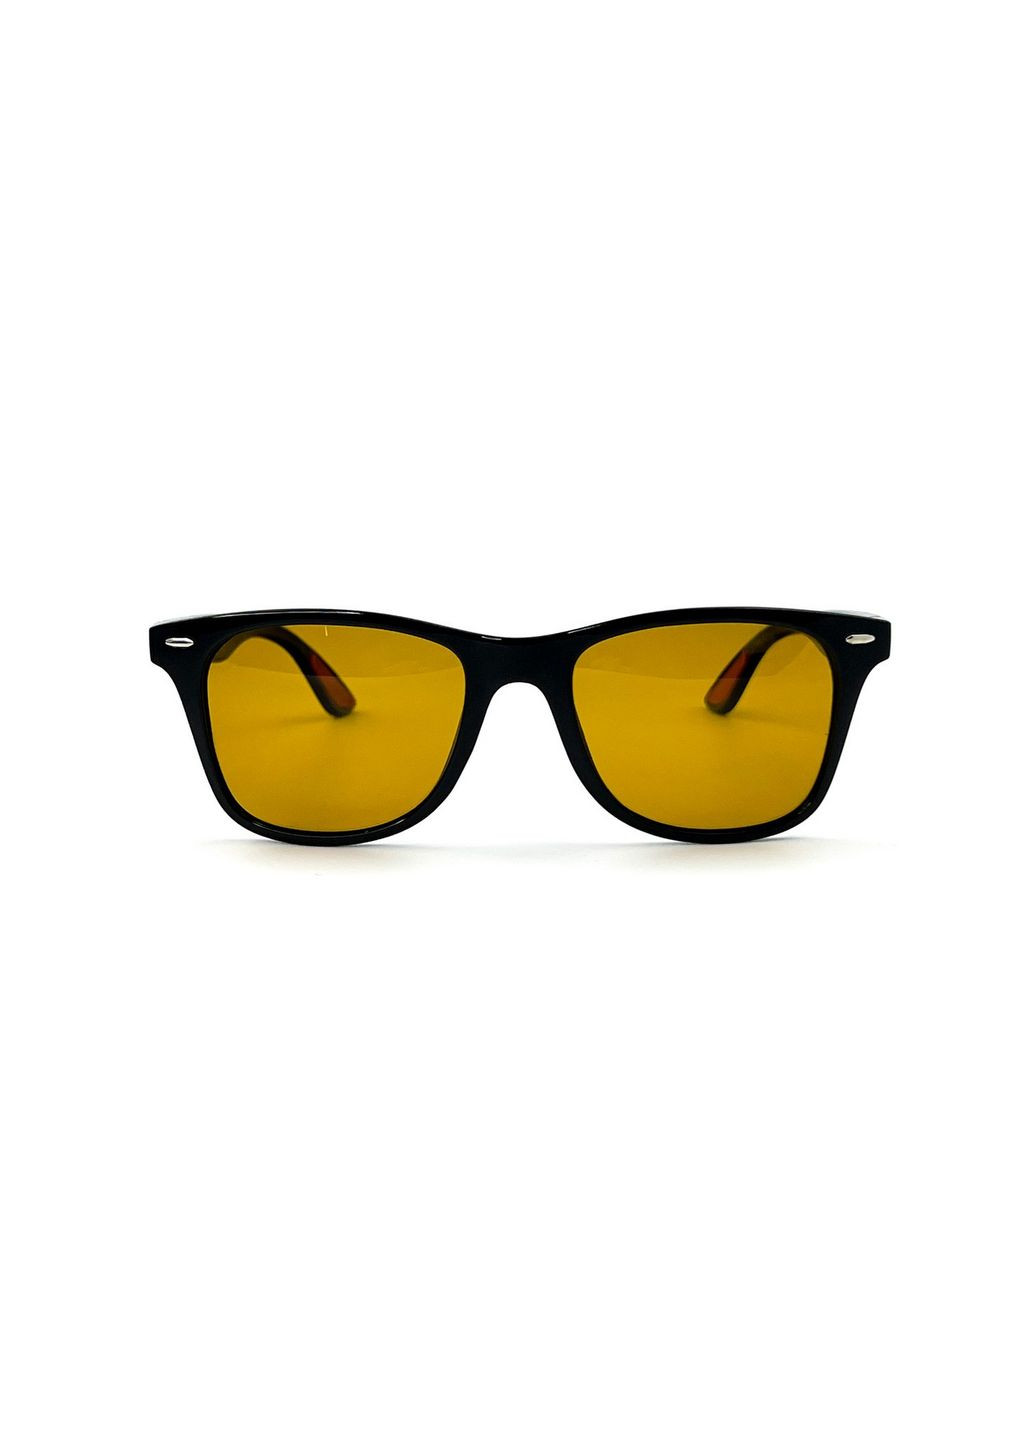 Солнцезащитные очки с поляризацией Вайфарер женские LuckyLOOK 199-606 (294205845)